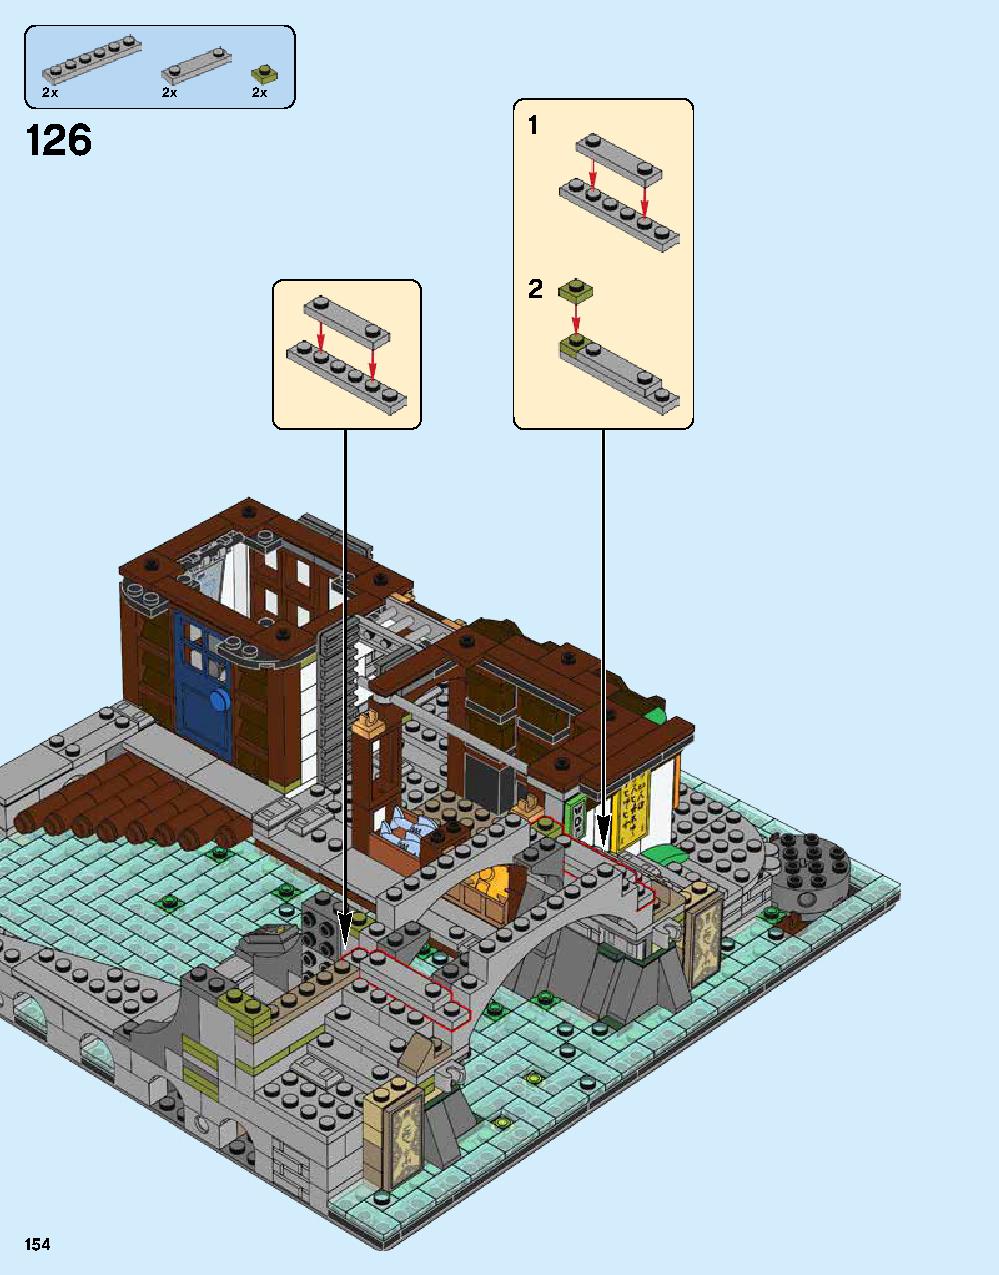 ニンジャゴー シティ 70620 レゴの商品情報 レゴの説明書・組立方法 154 page